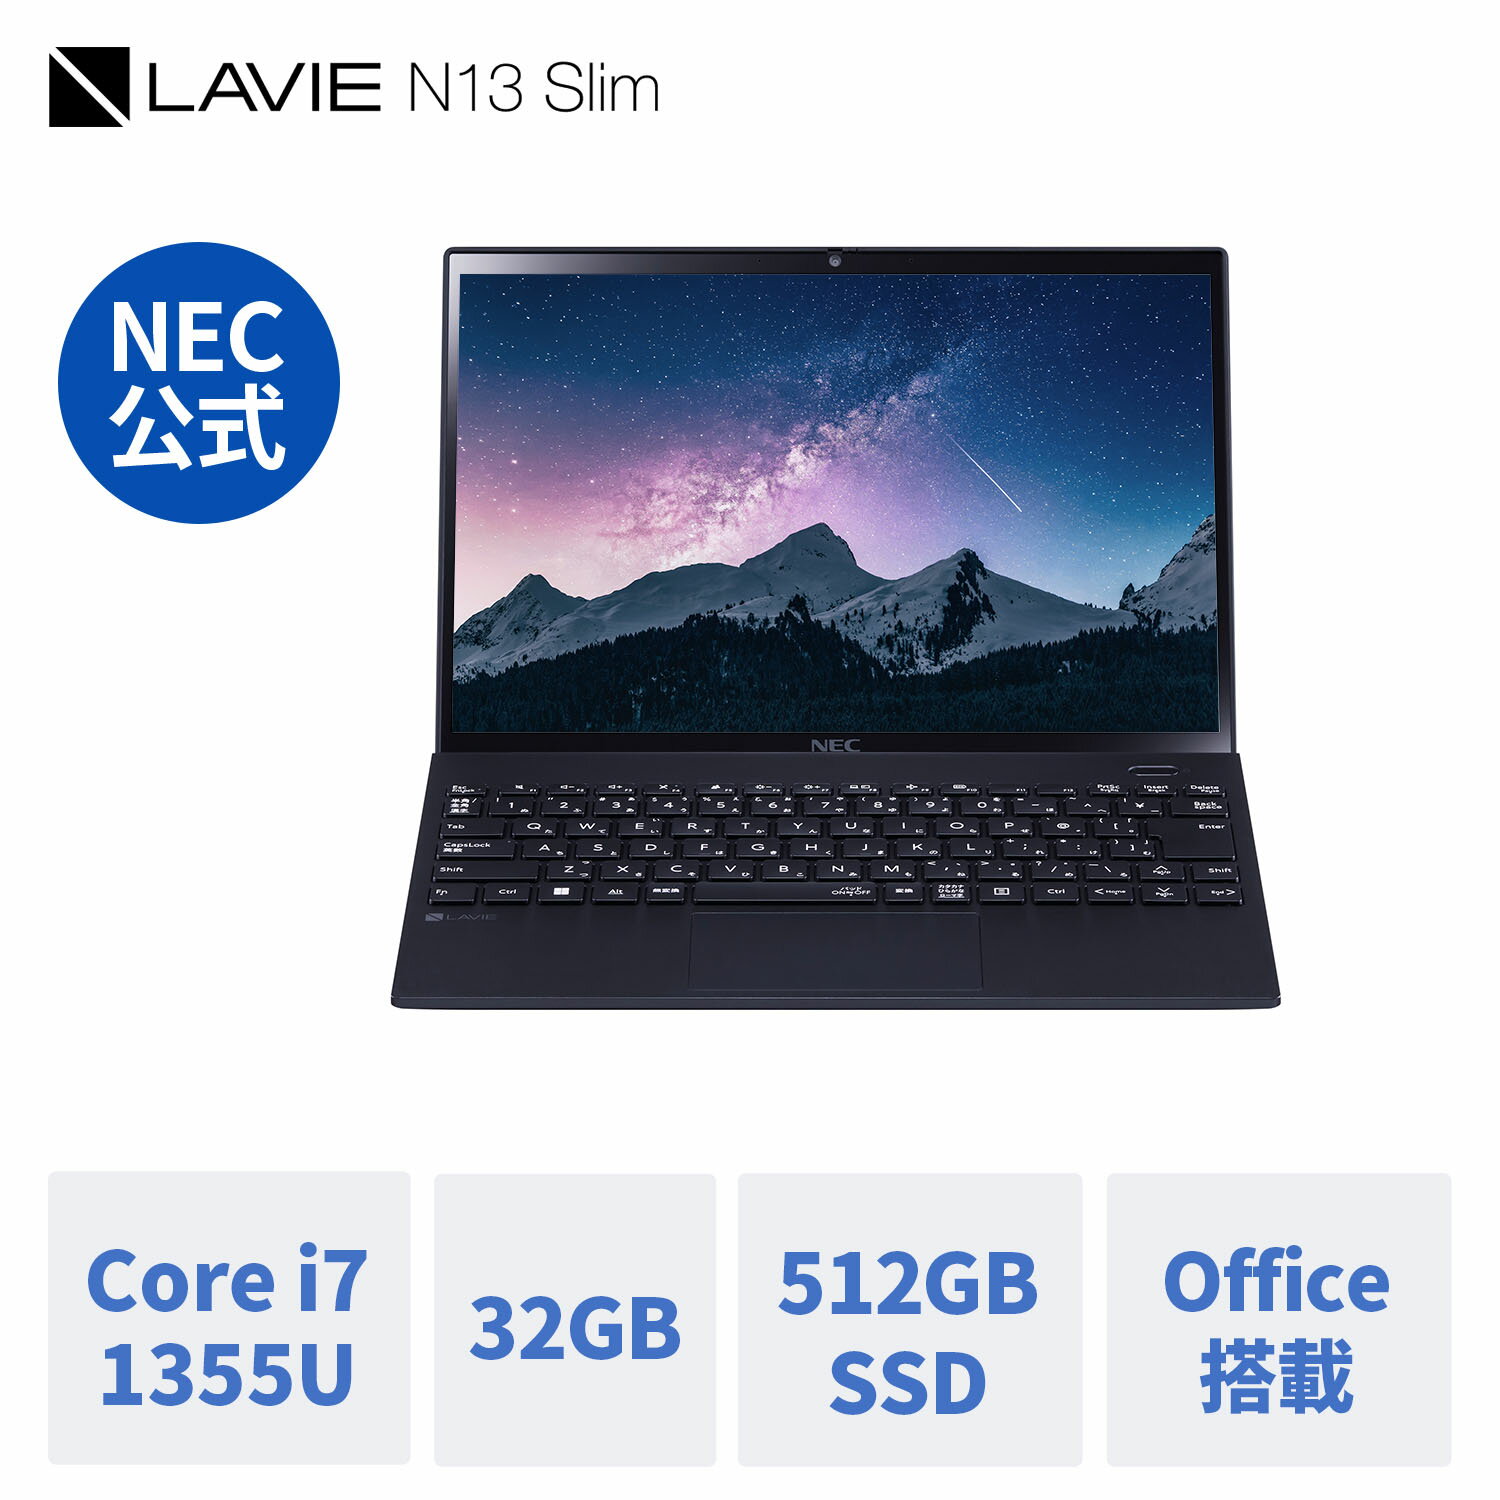  新品 軽量 NEC モバイルノートパソコン office付き LAVIE Direct N13 Slim 13.3インチ Windows 11 Home Core i7-1355U 32GB メモリ 512GB SSD 1年保証 送料無料 yxe